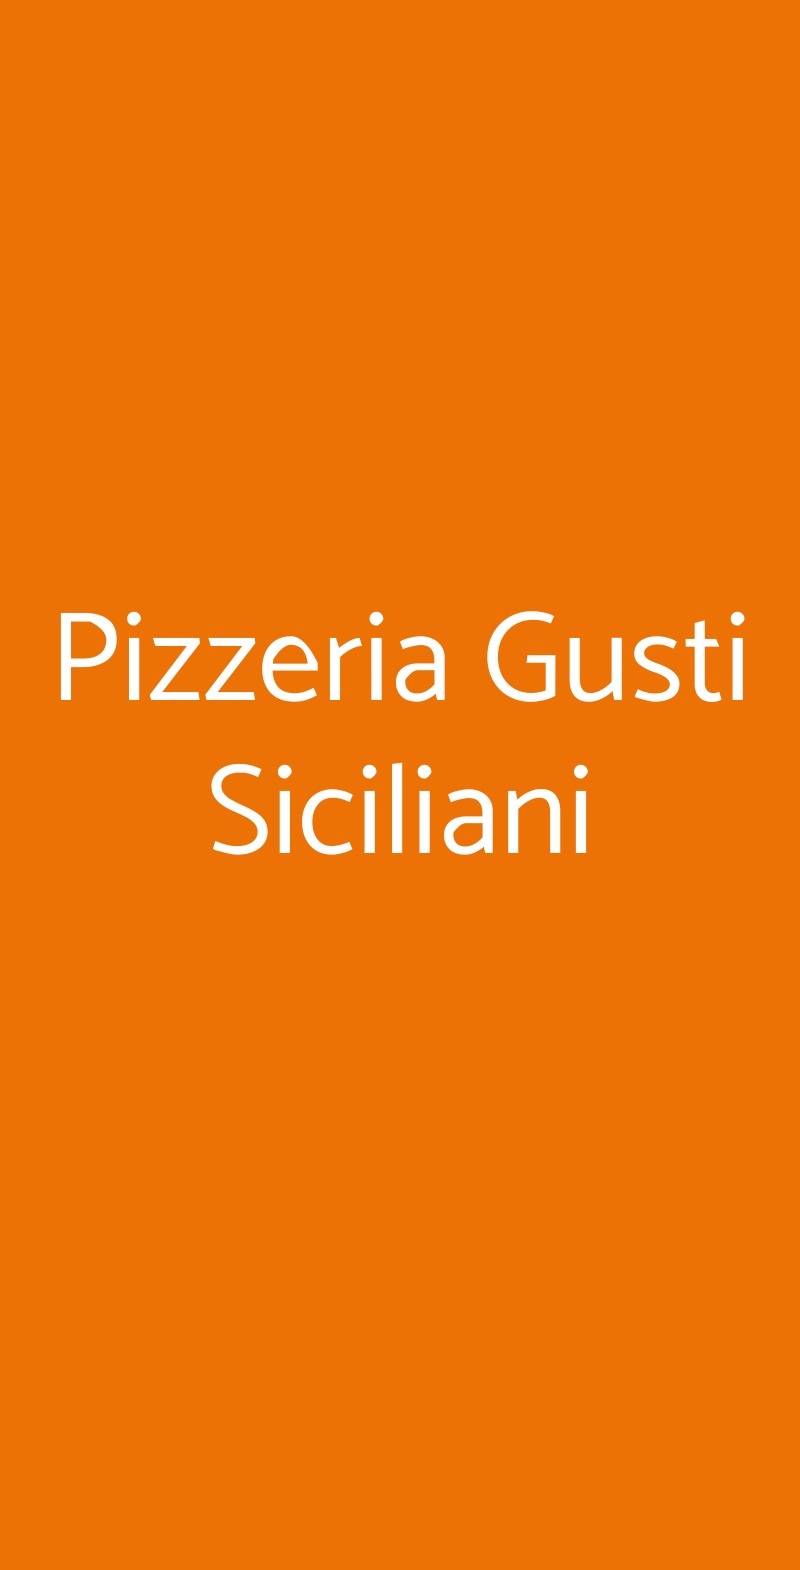 Pizzeria Gusti Siciliani Catania menù 1 pagina